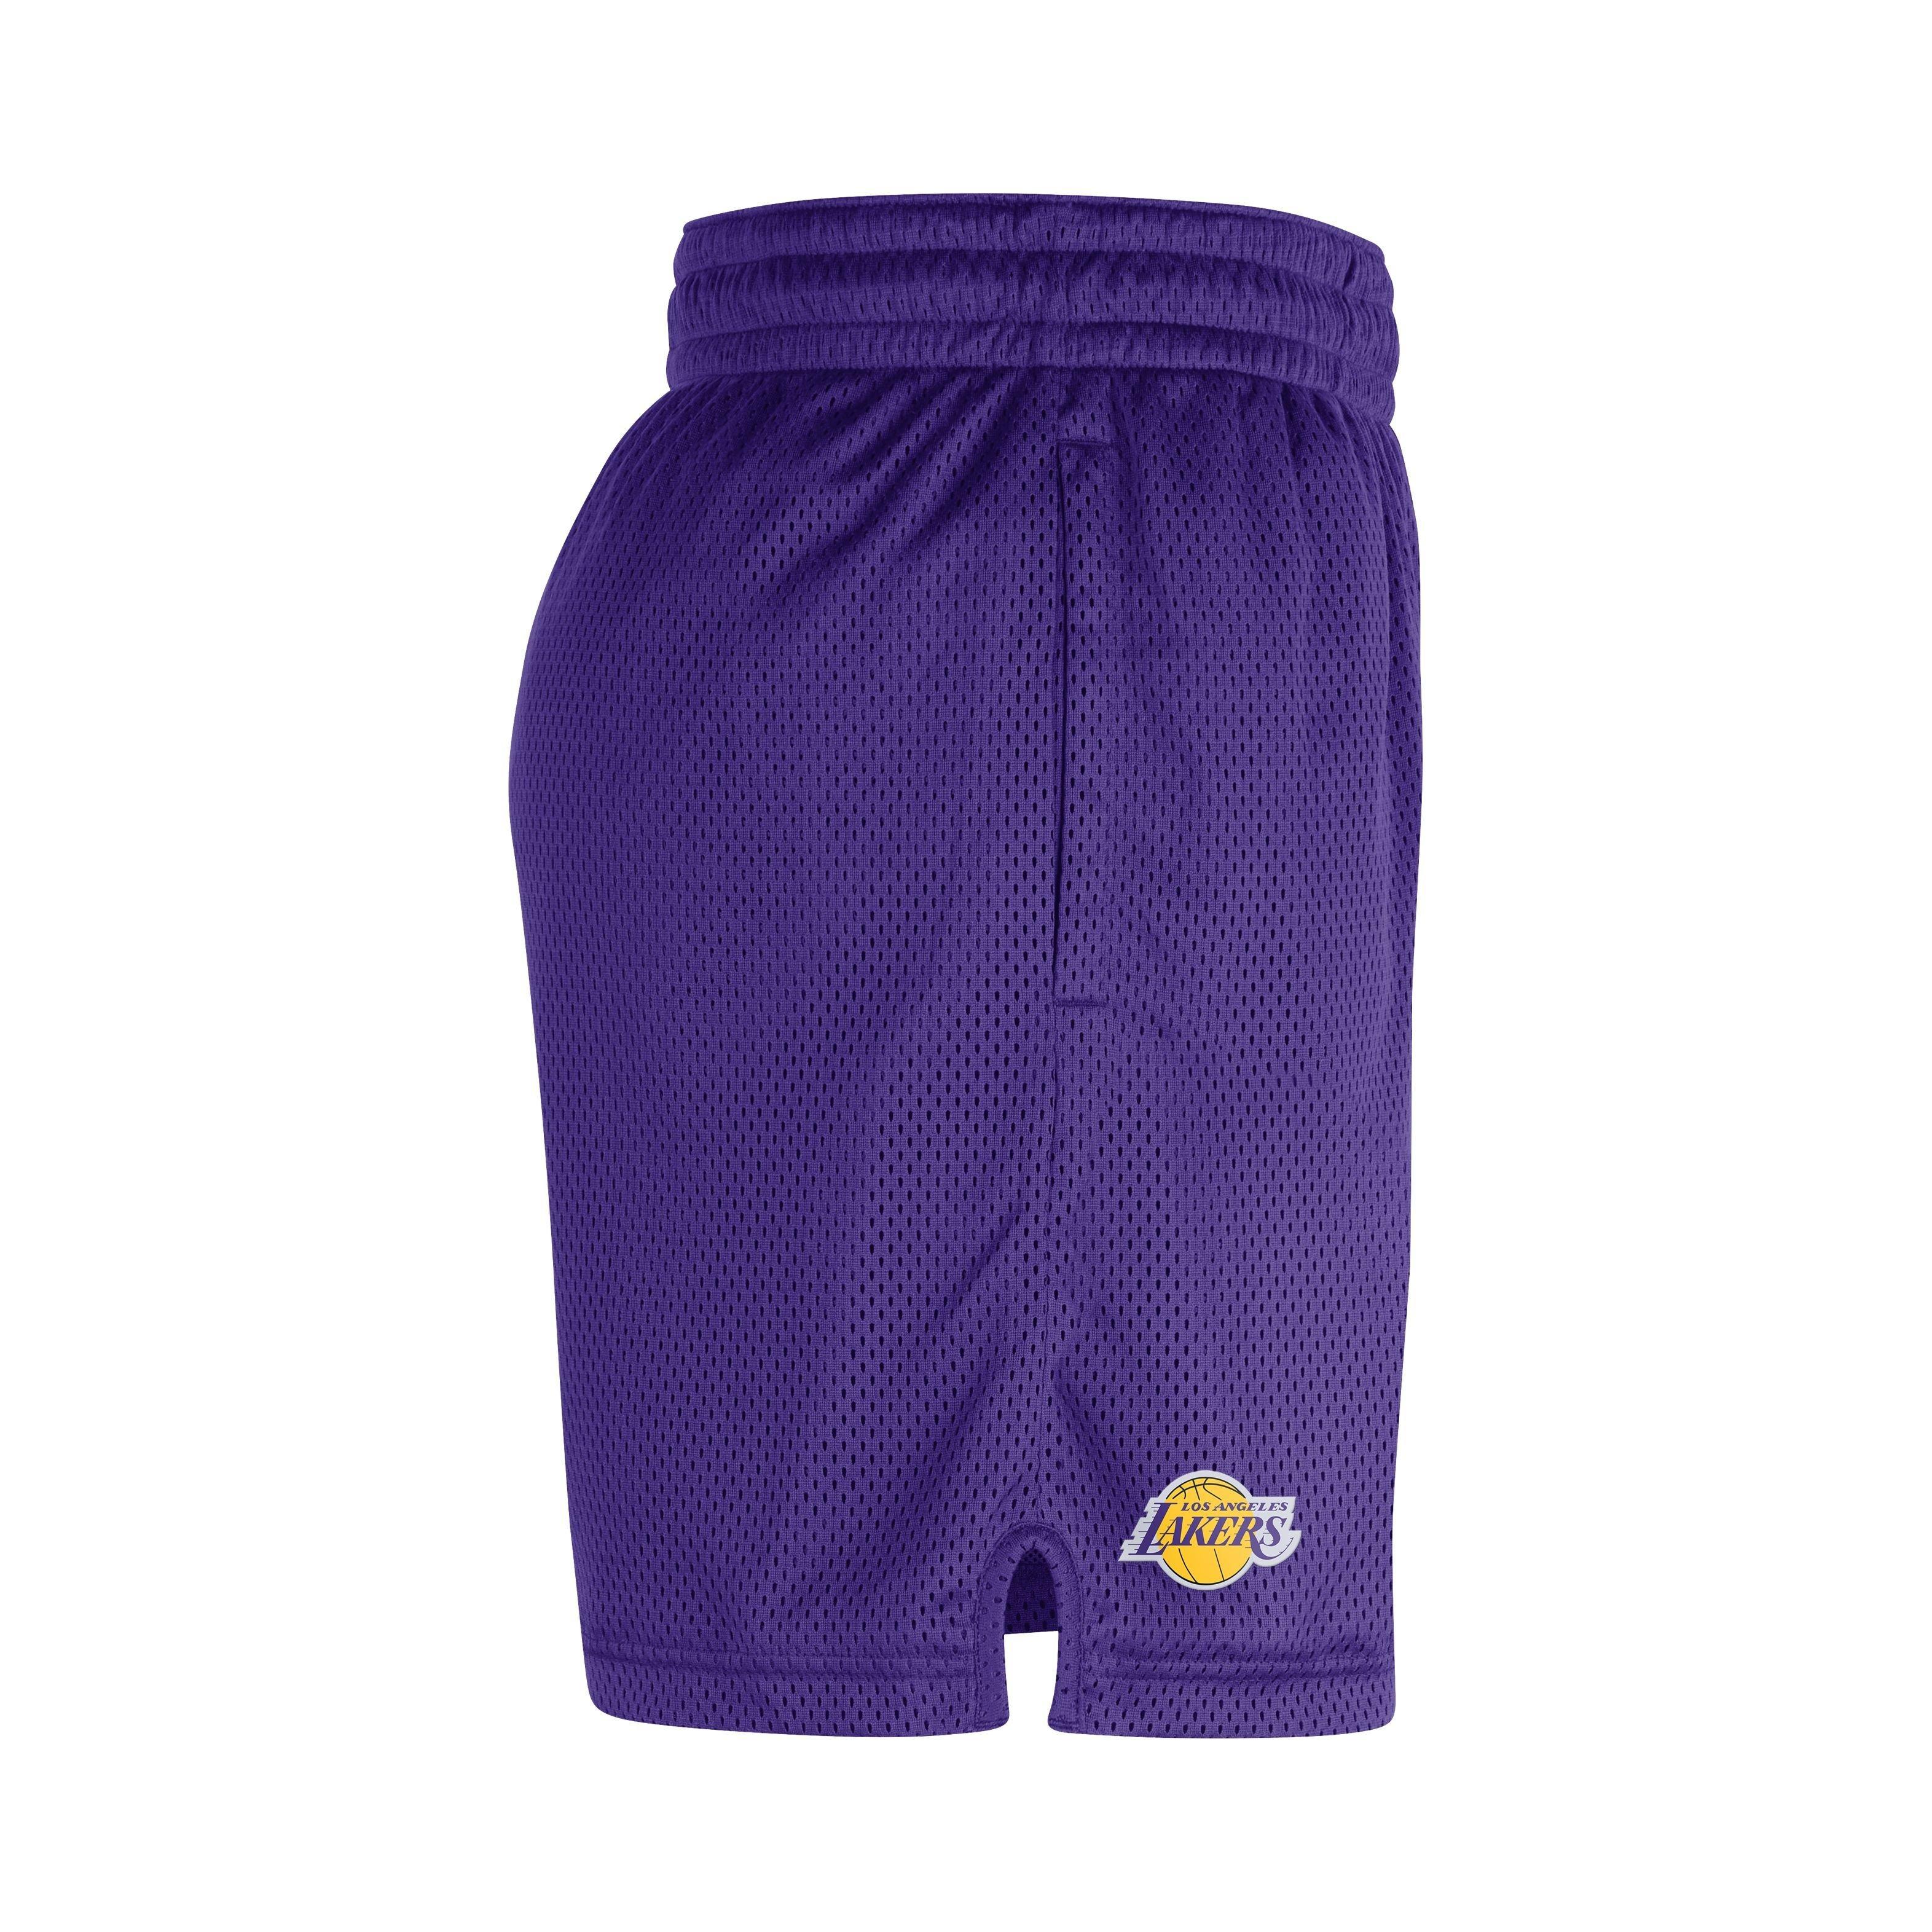 Los Angeles Lakers Shorts, Lakers Mesh Shorts, Performance Shorts